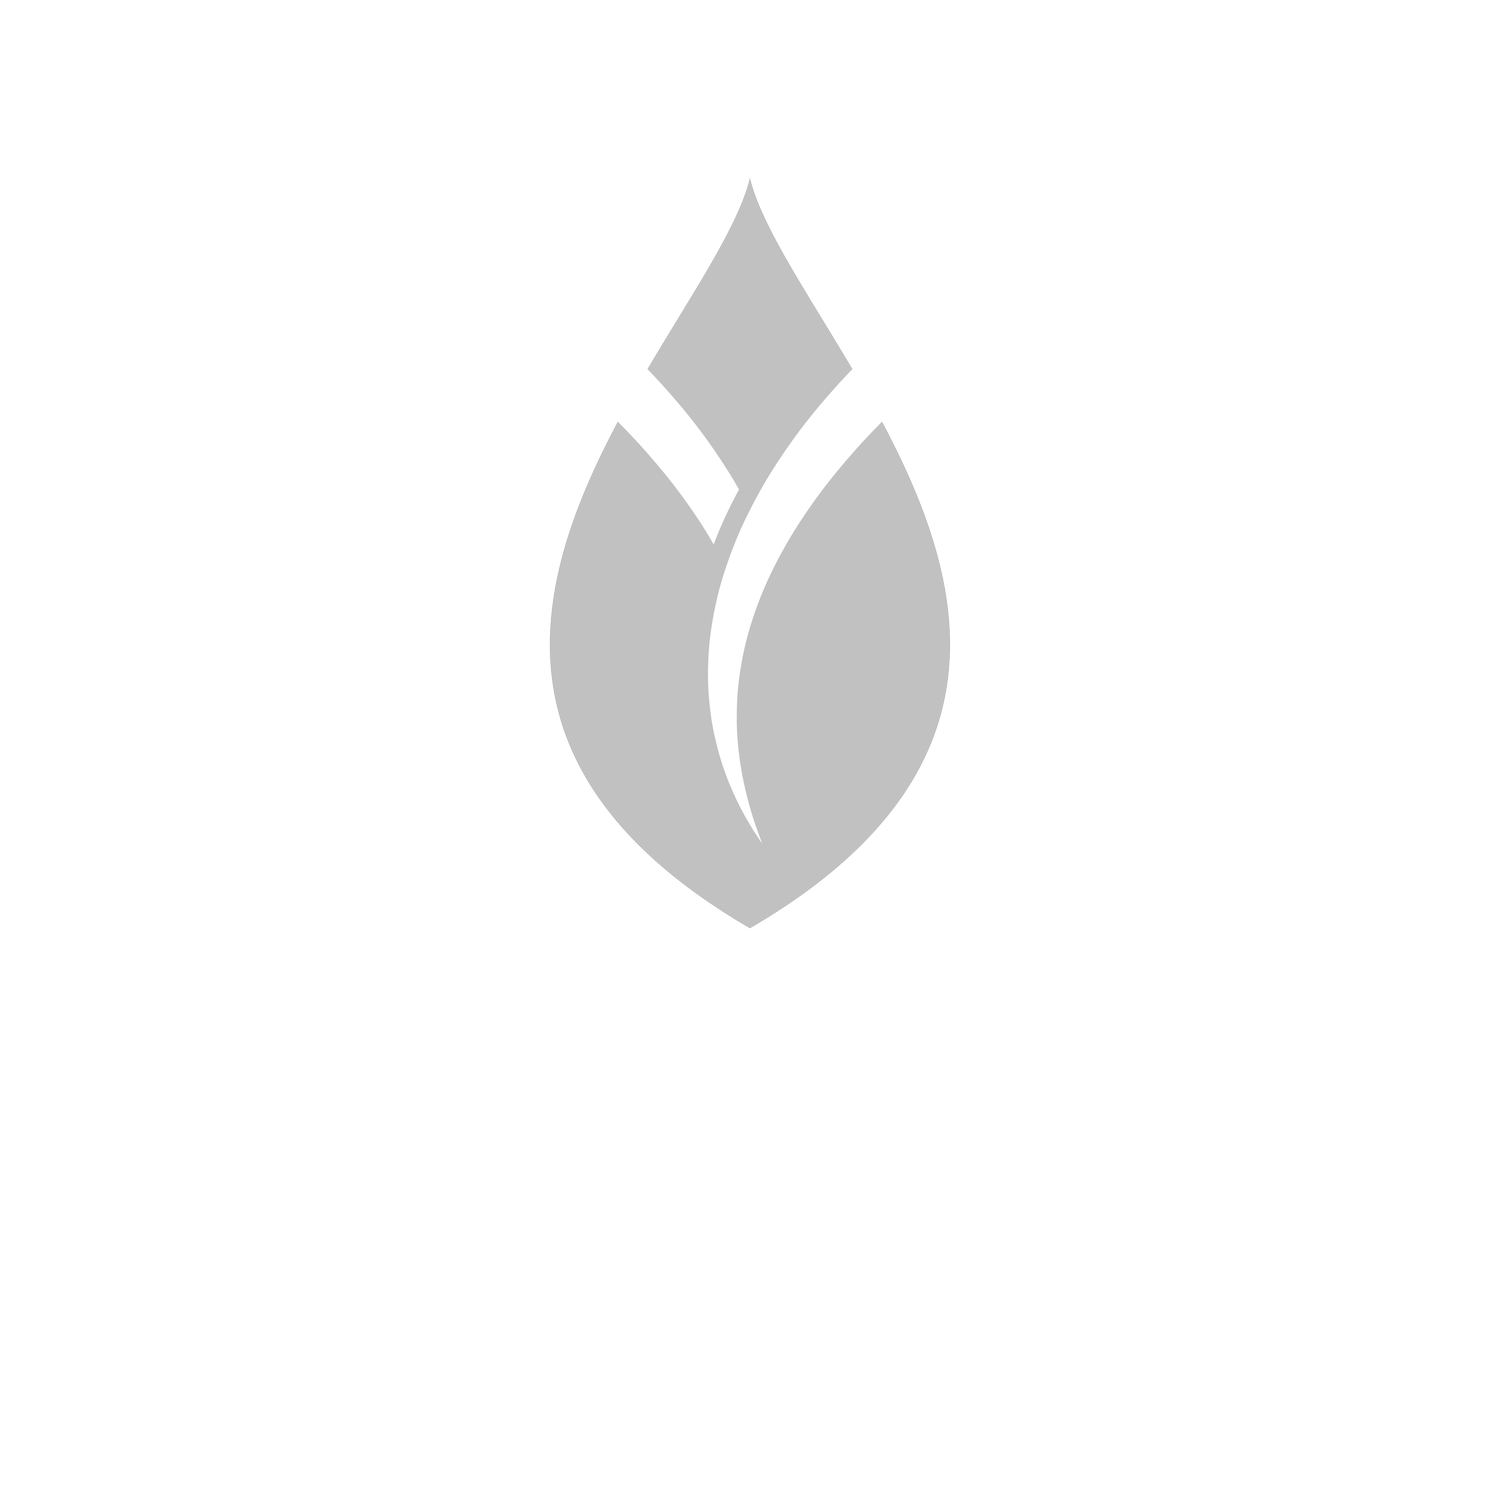 PilatesCNTR